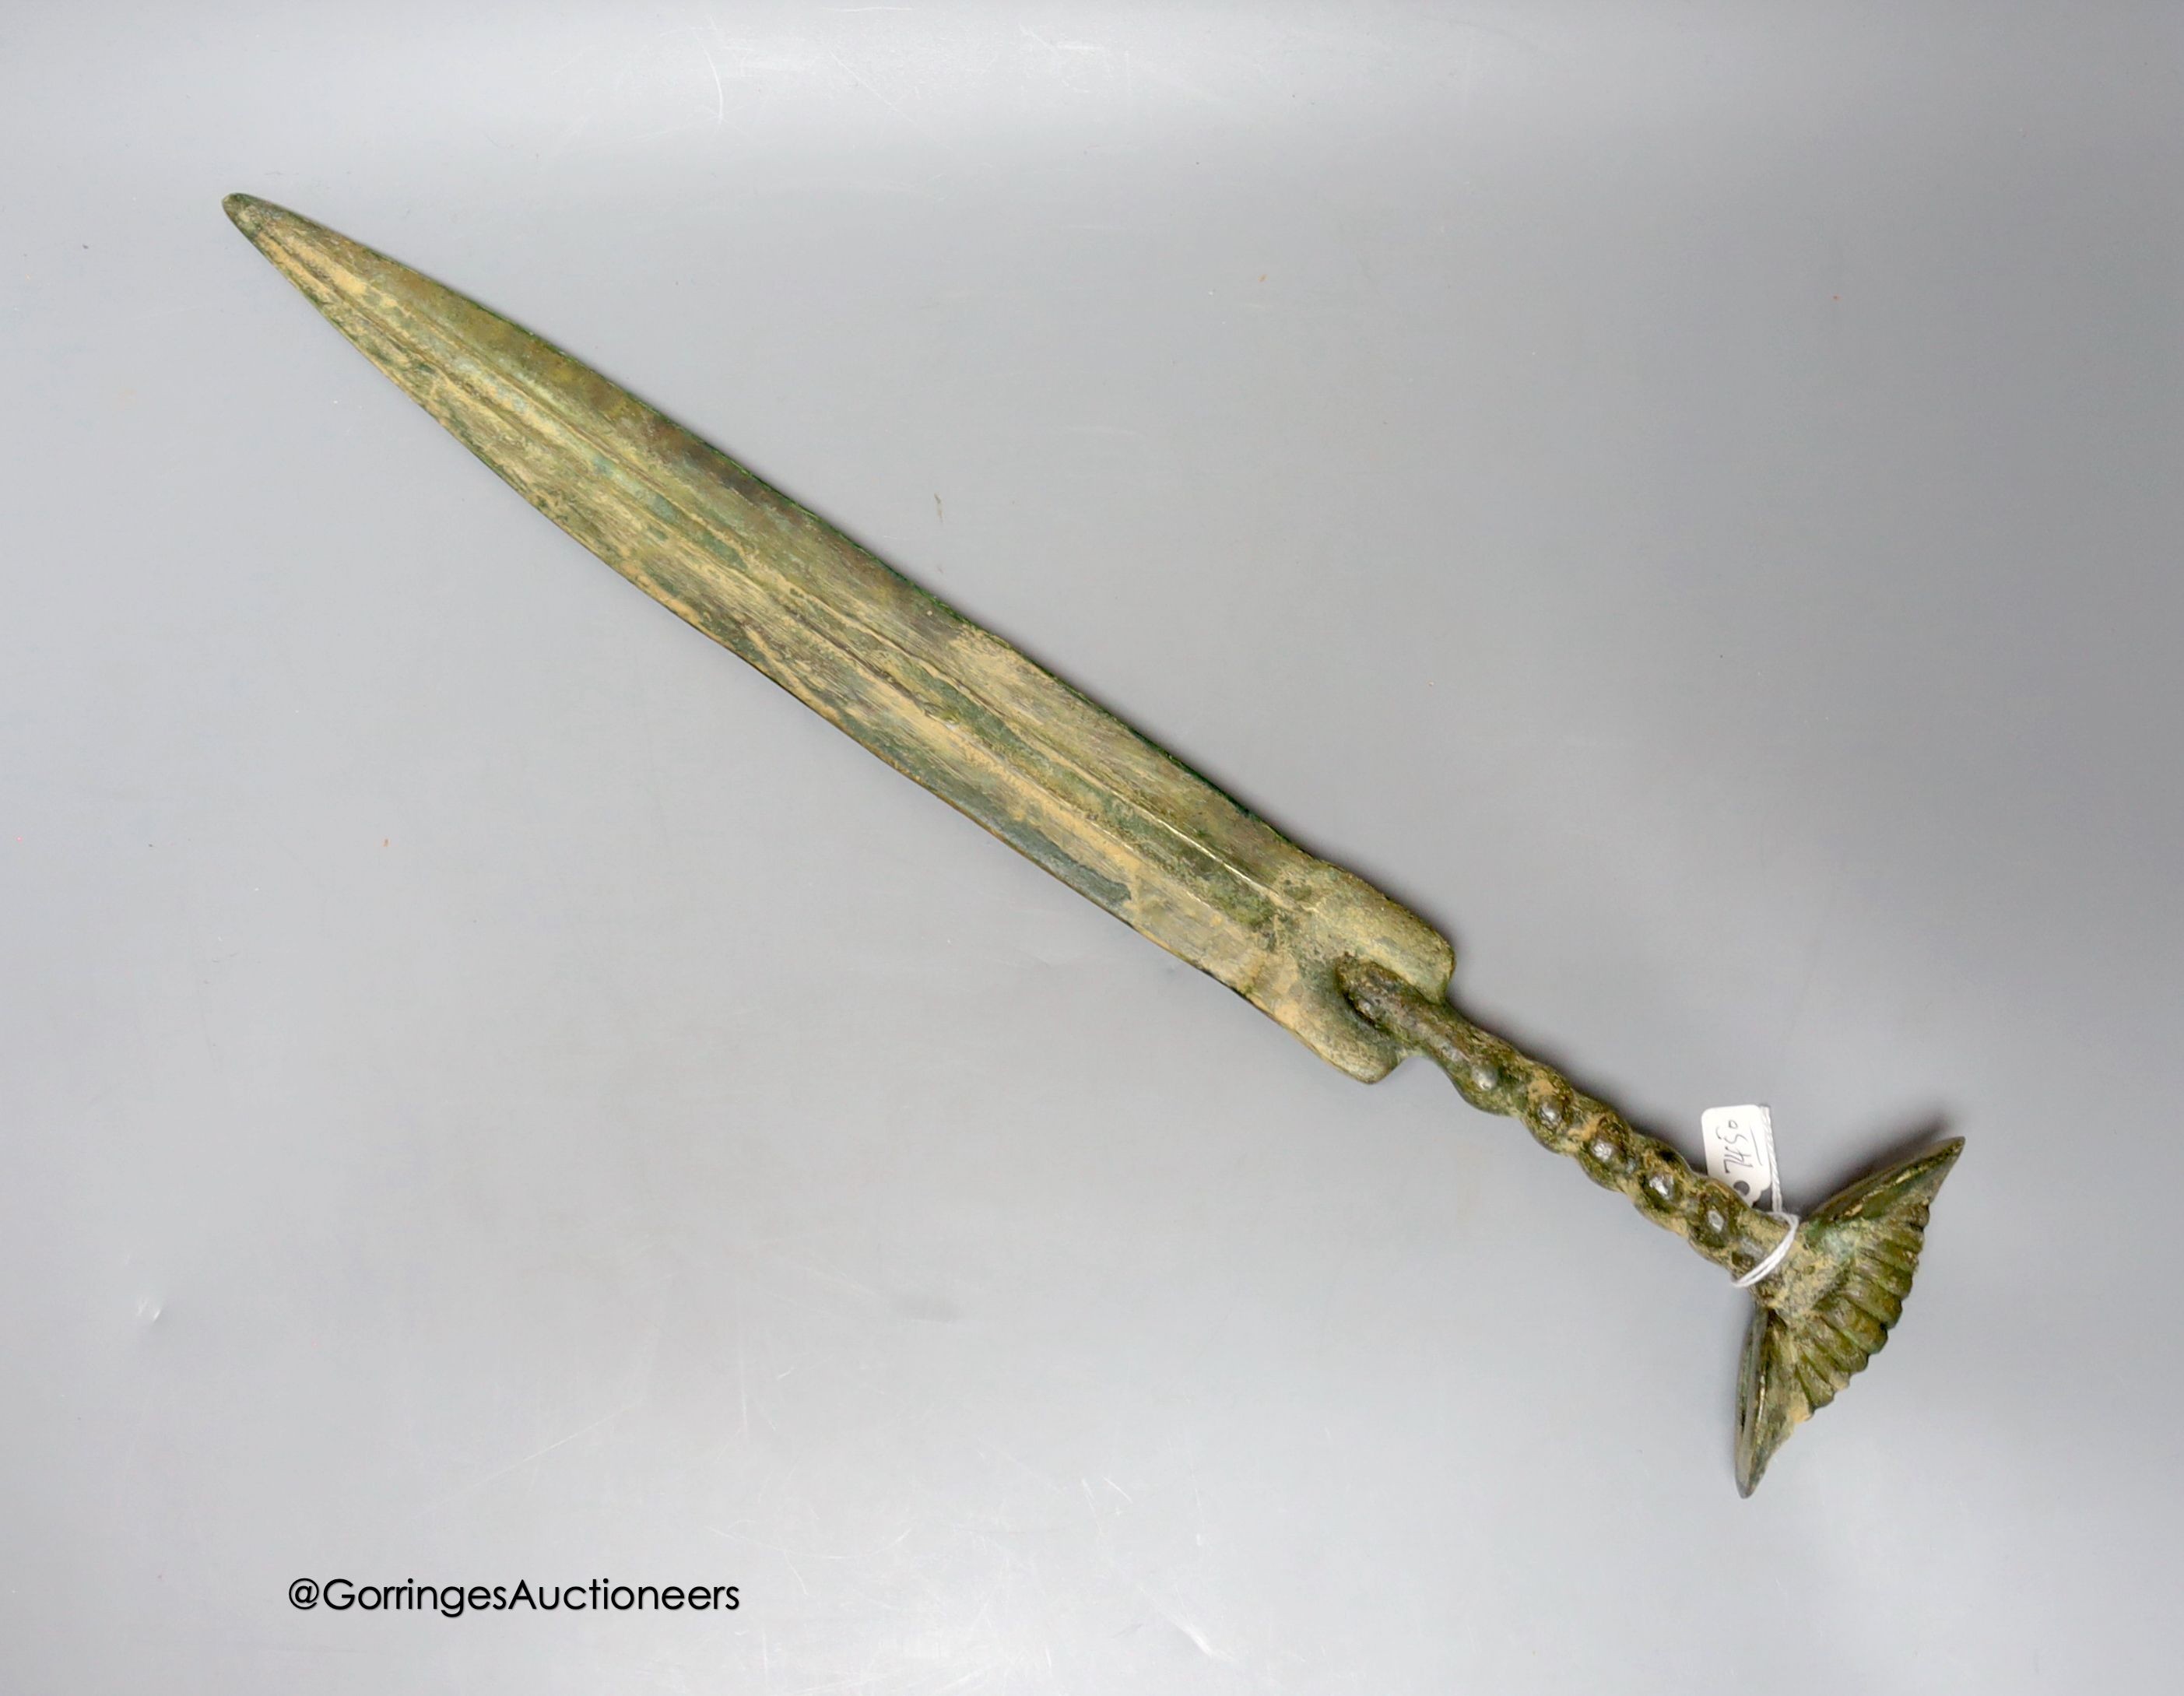 A bronze dagger/ sword